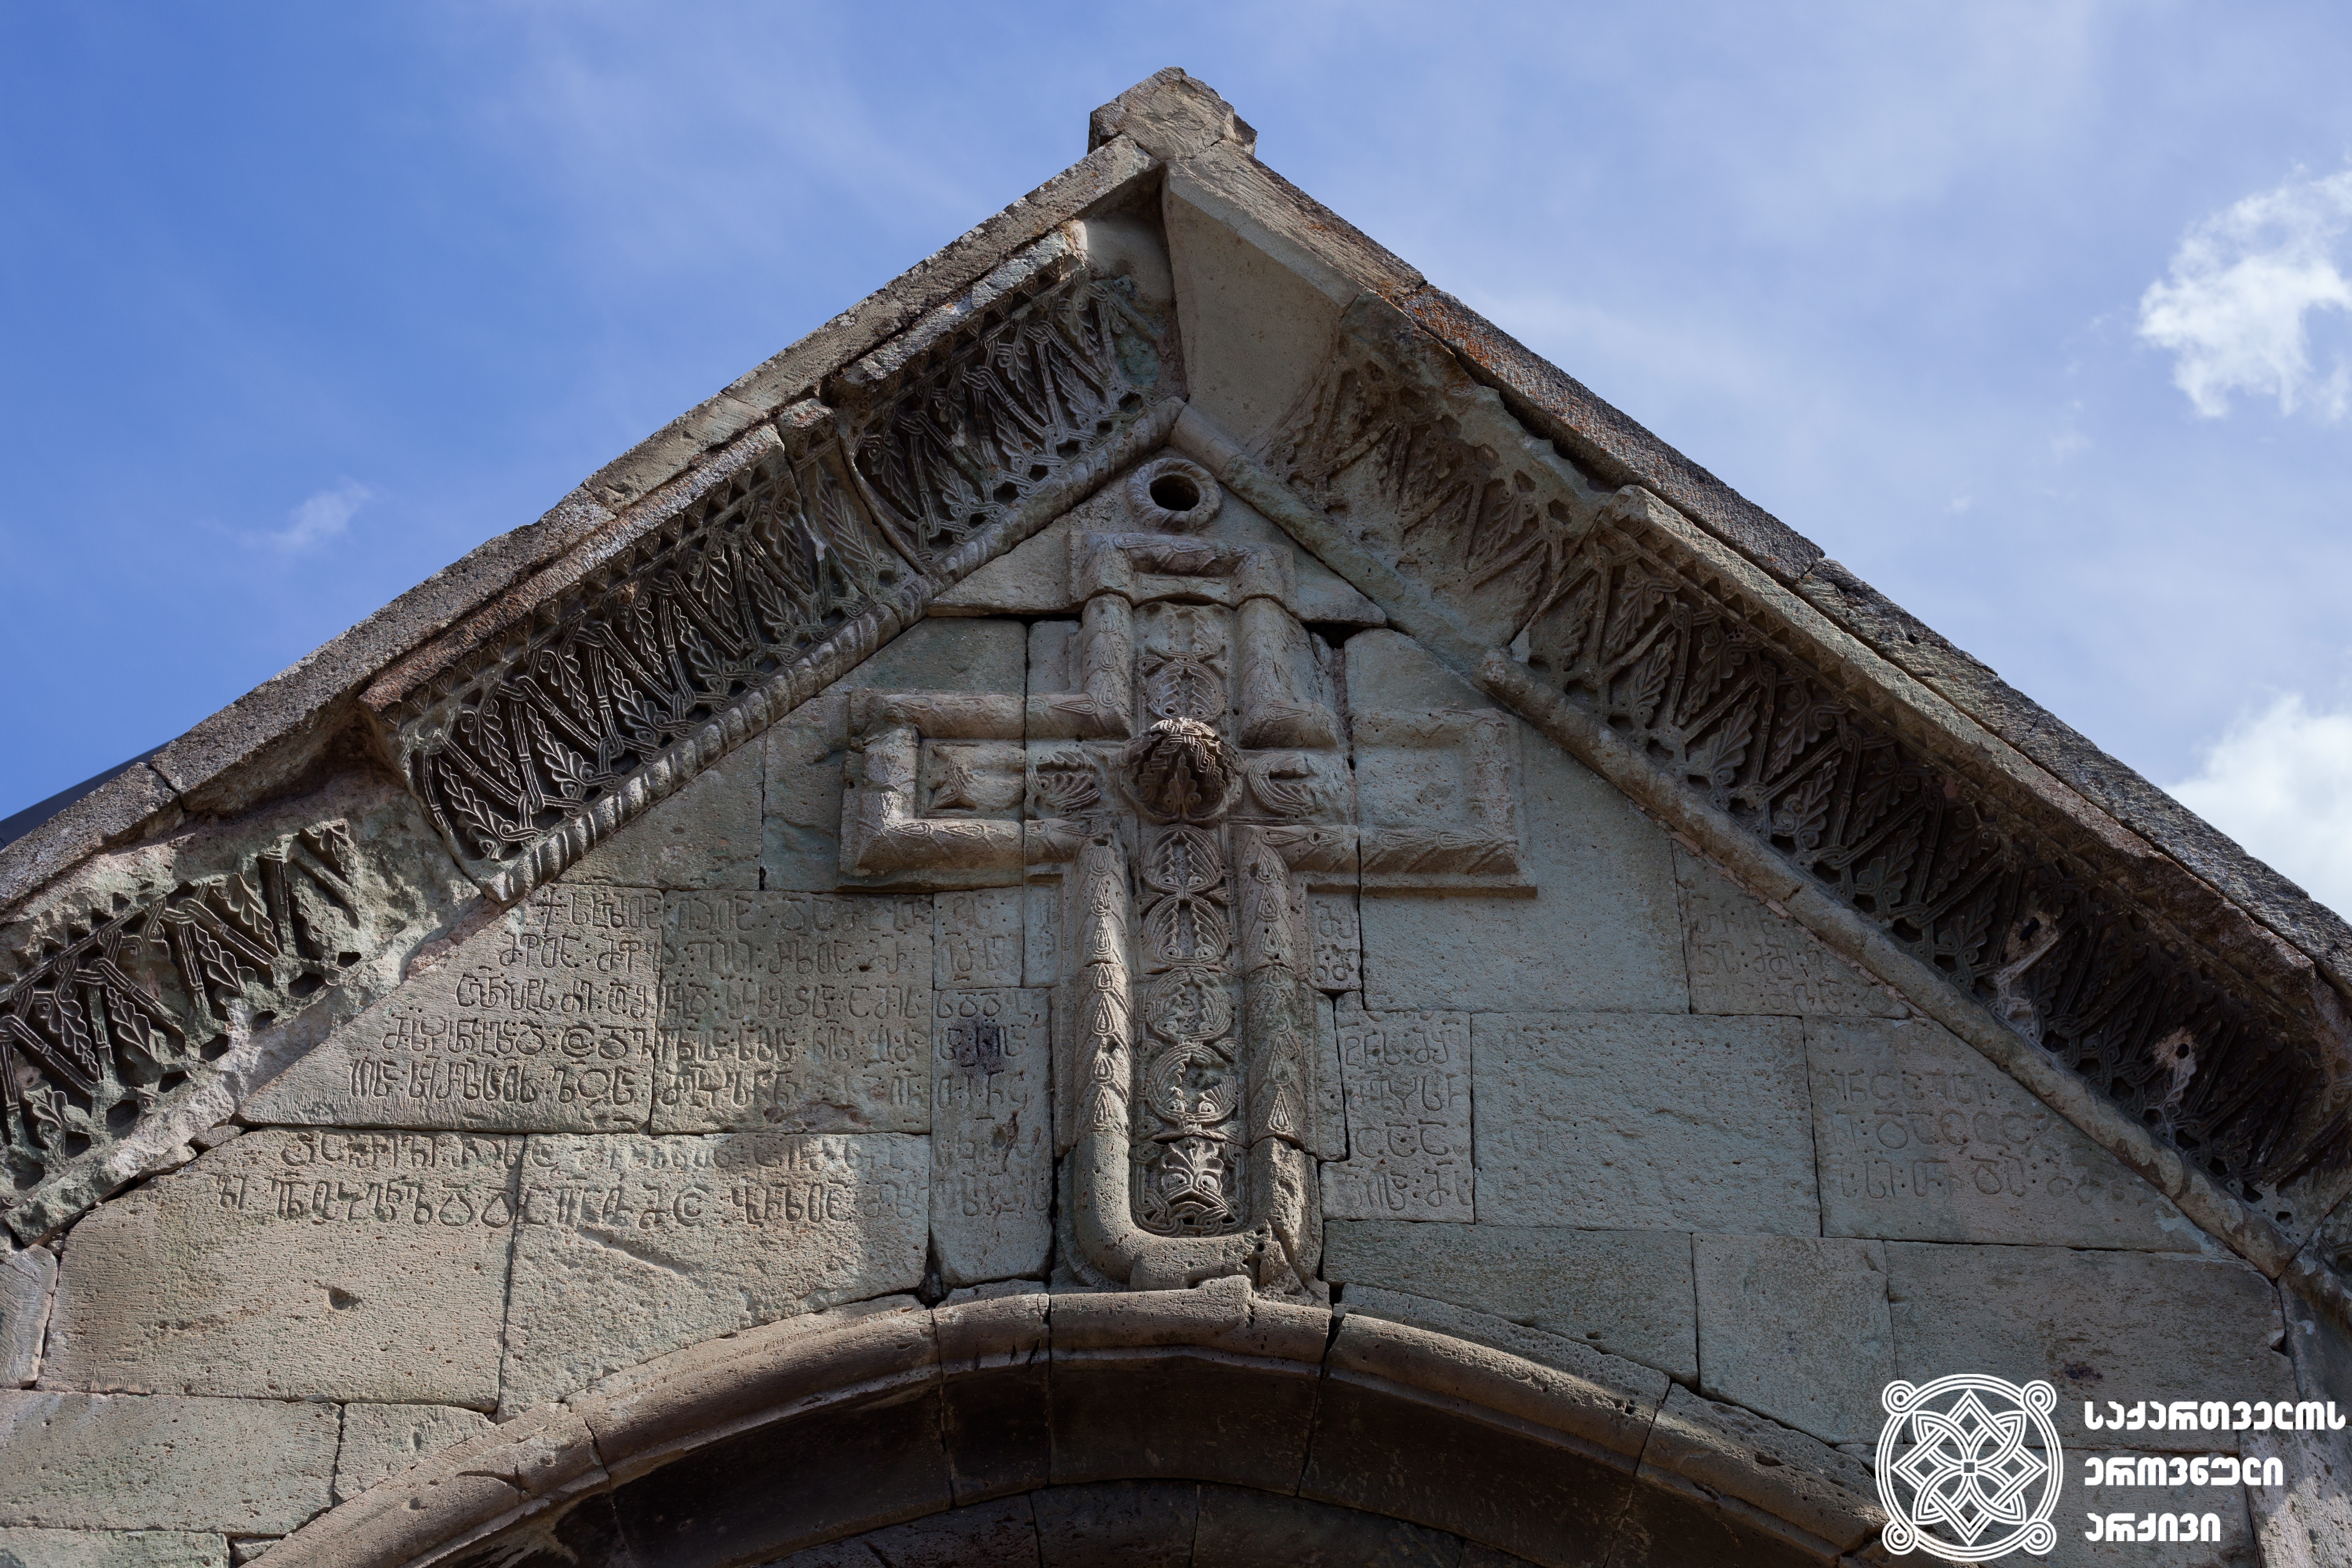 ჯვარი და წარწერები დმანისის სიონის ტაძრის დასავლეთის კარიბჭეზე, 1213-1222 წლები. დმანისის ღვთისმშობლის ტაძარი, VI საუკუნე<br>
Cross and the inscriptions on the western porch of Dmanisi Sioni Church, 1213-1222 
Dmanisi Virgin Mary Church, 6th century